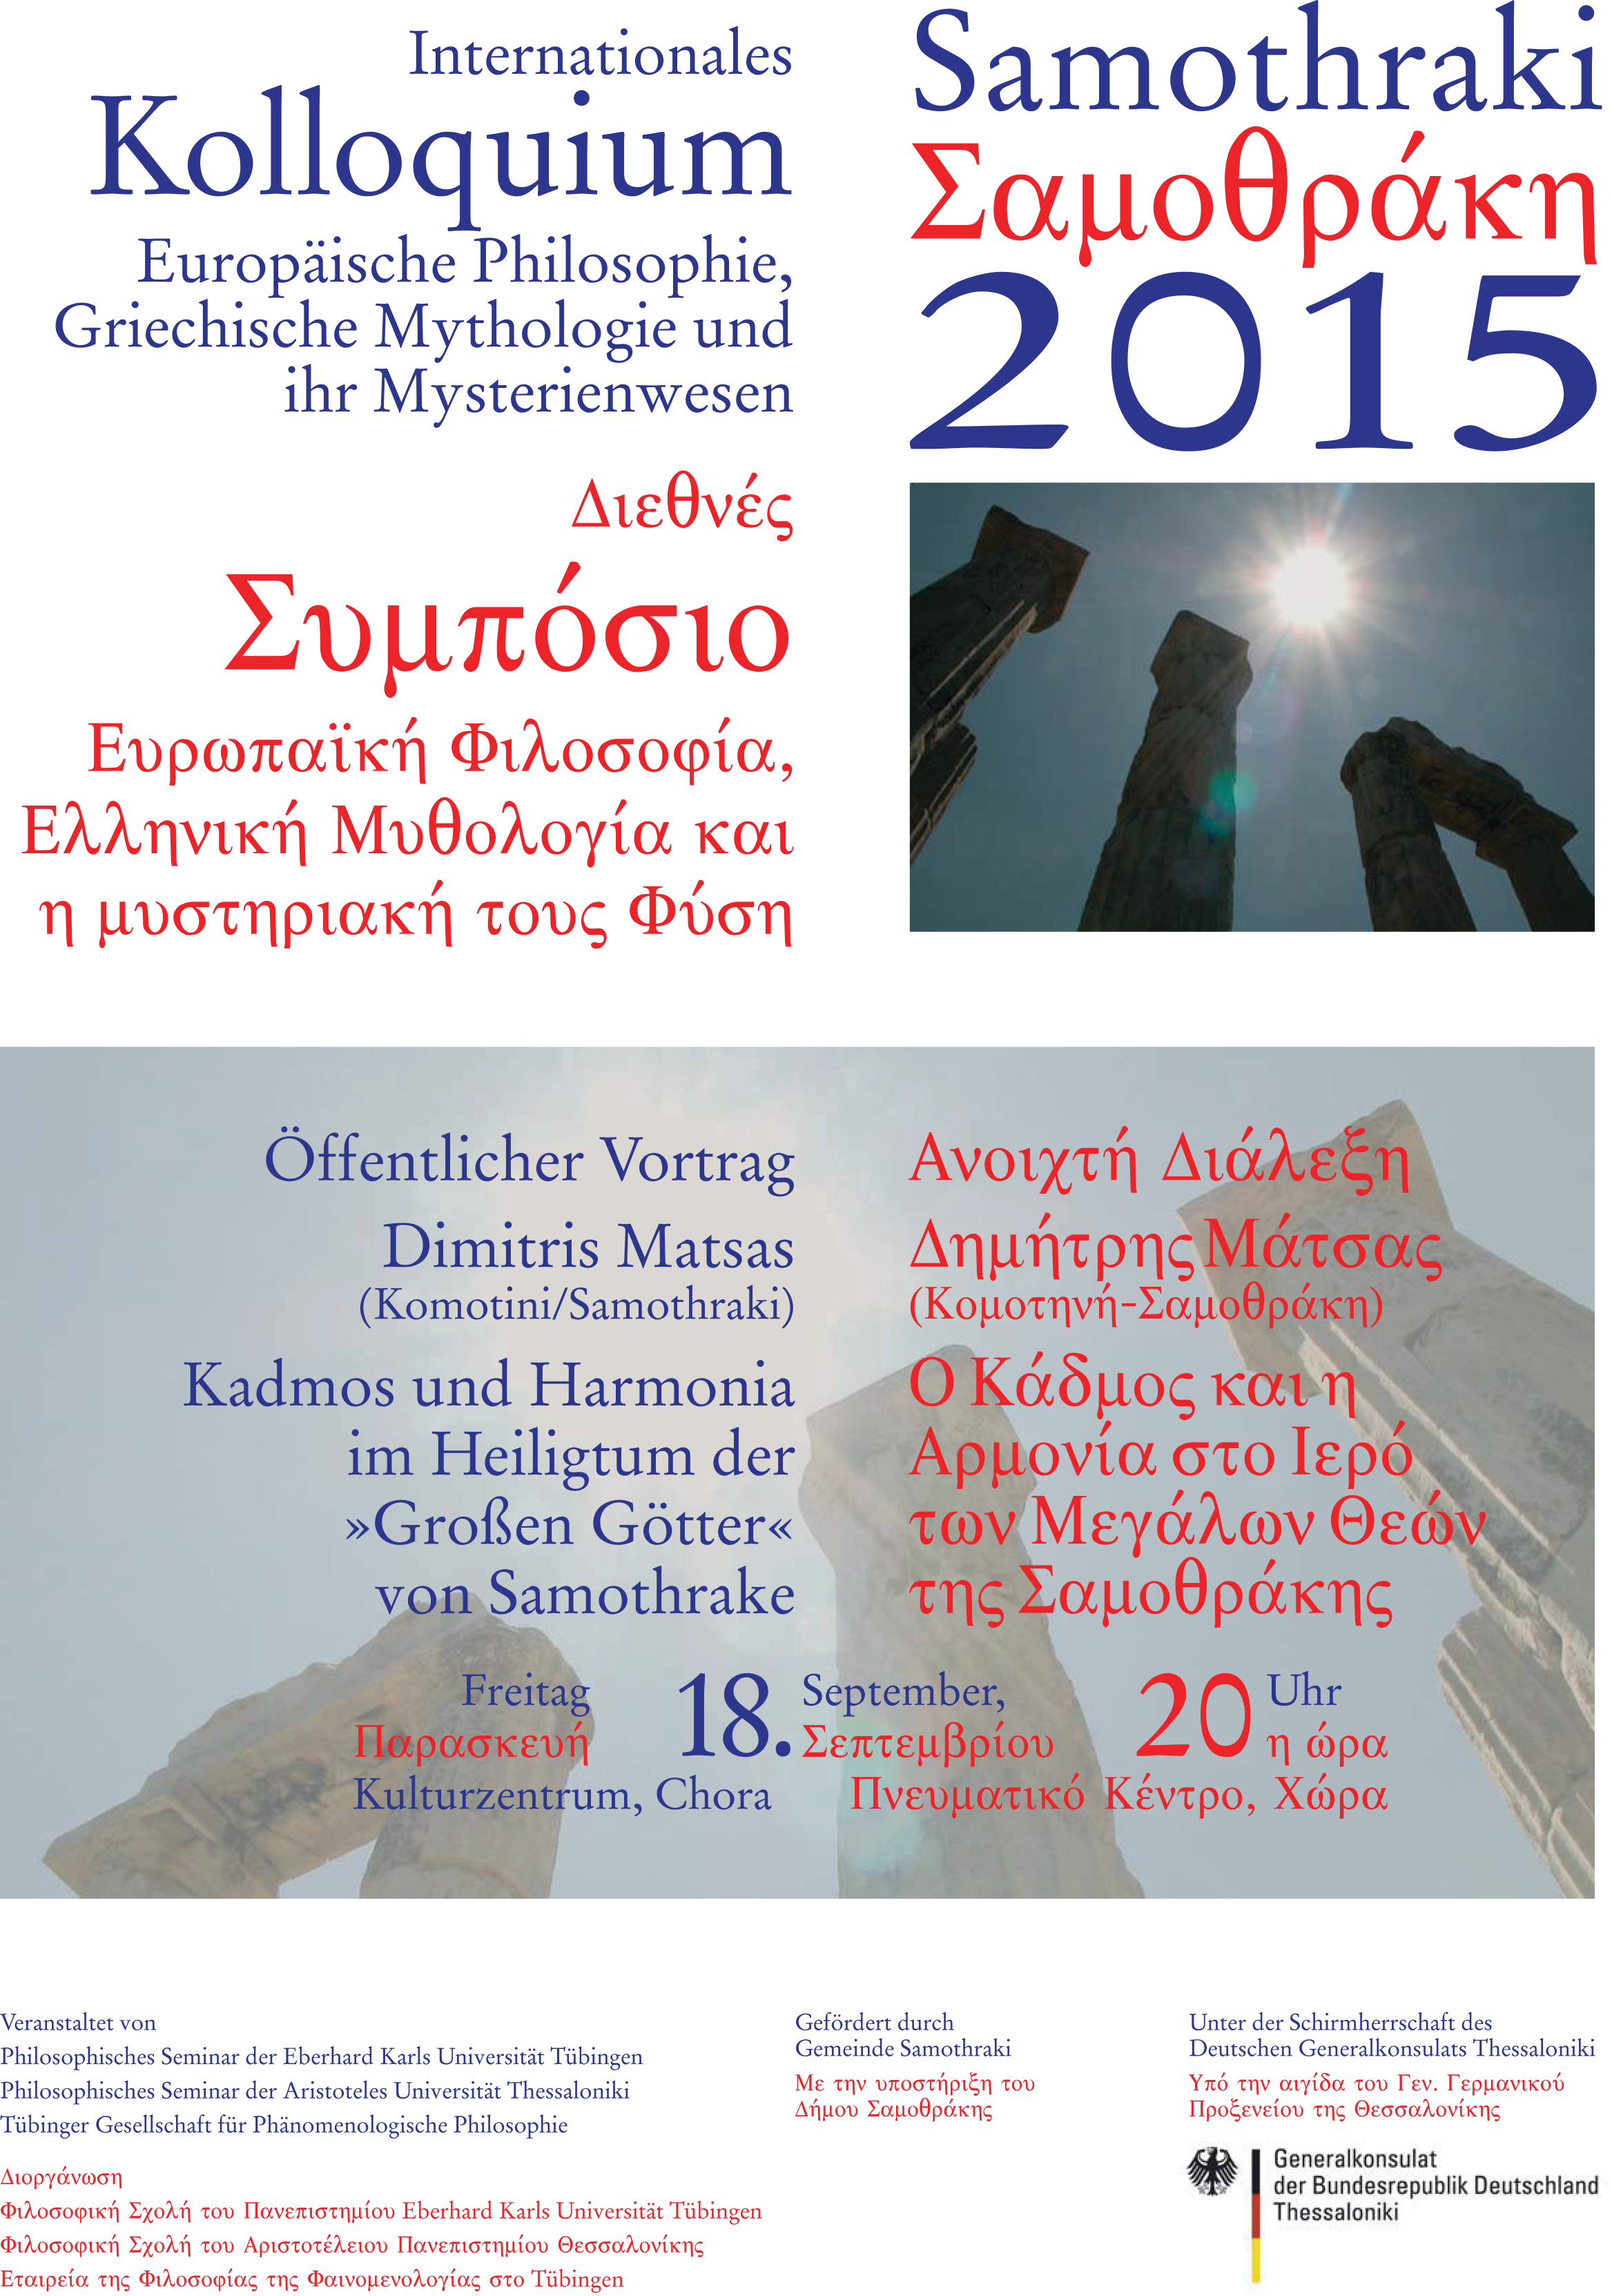 ΔΗΜΟΣ ΣΑΜΟΘΡΑΚΗΣ | Σαμοθράκη: 3ο Φιλοσοφικό Συνέδριο 15-18 Σεπτεμβρίου 2015